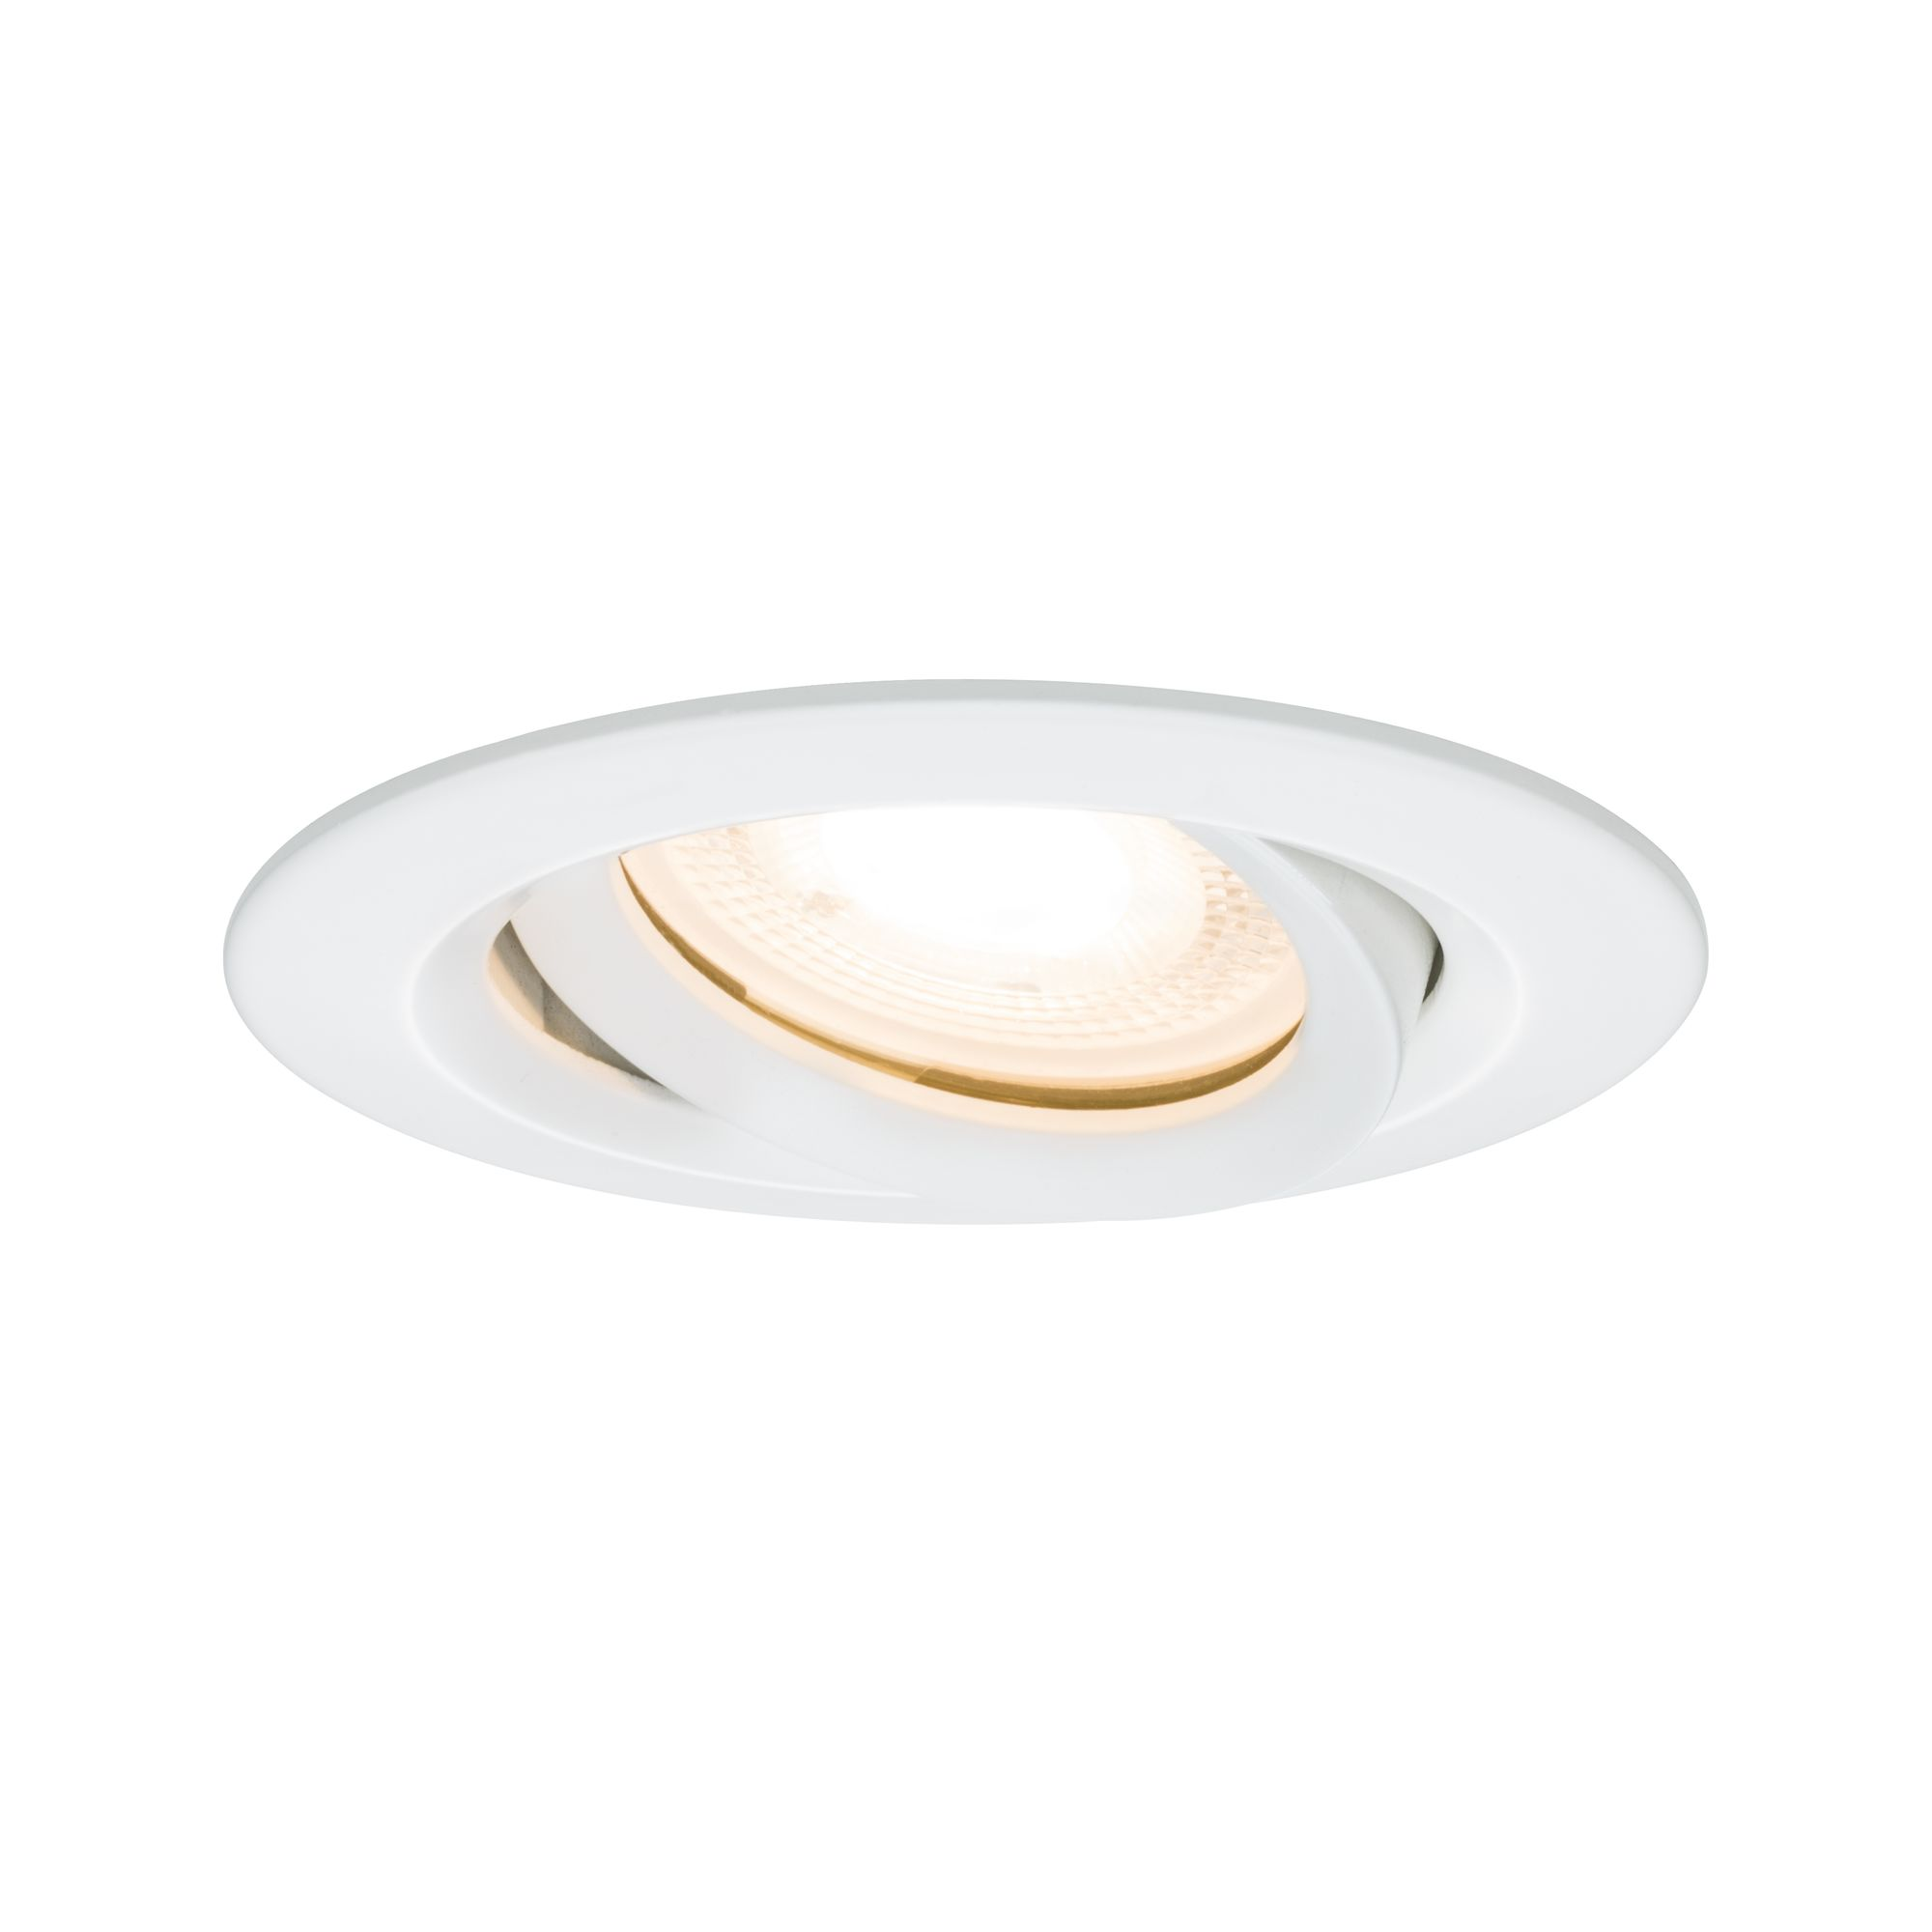 LED-Einbauleuchte 'Nova' Ø 93 mm weiß + product picture